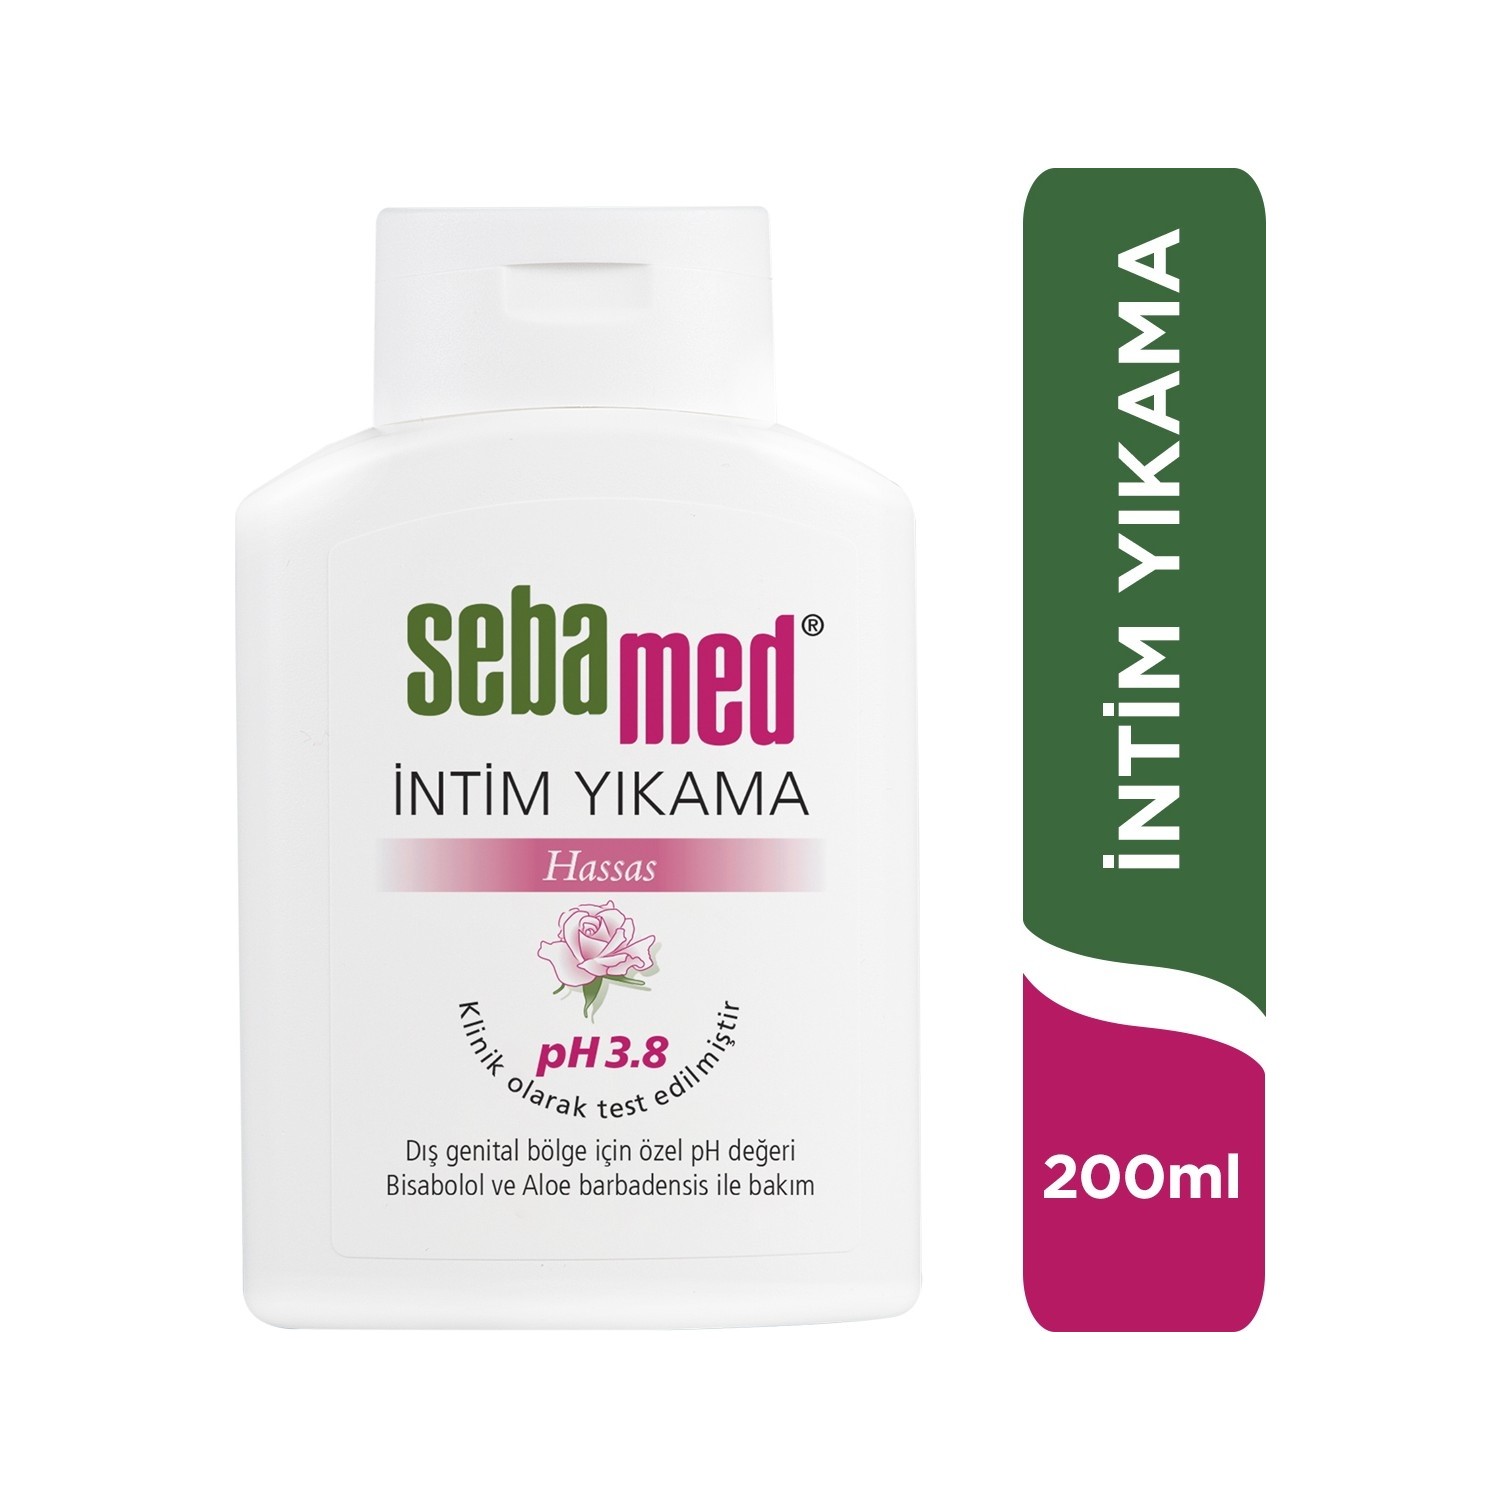 Очищающее средство Sebamed Intim Liquid для интимной гигиены, 200 мл цена и фото